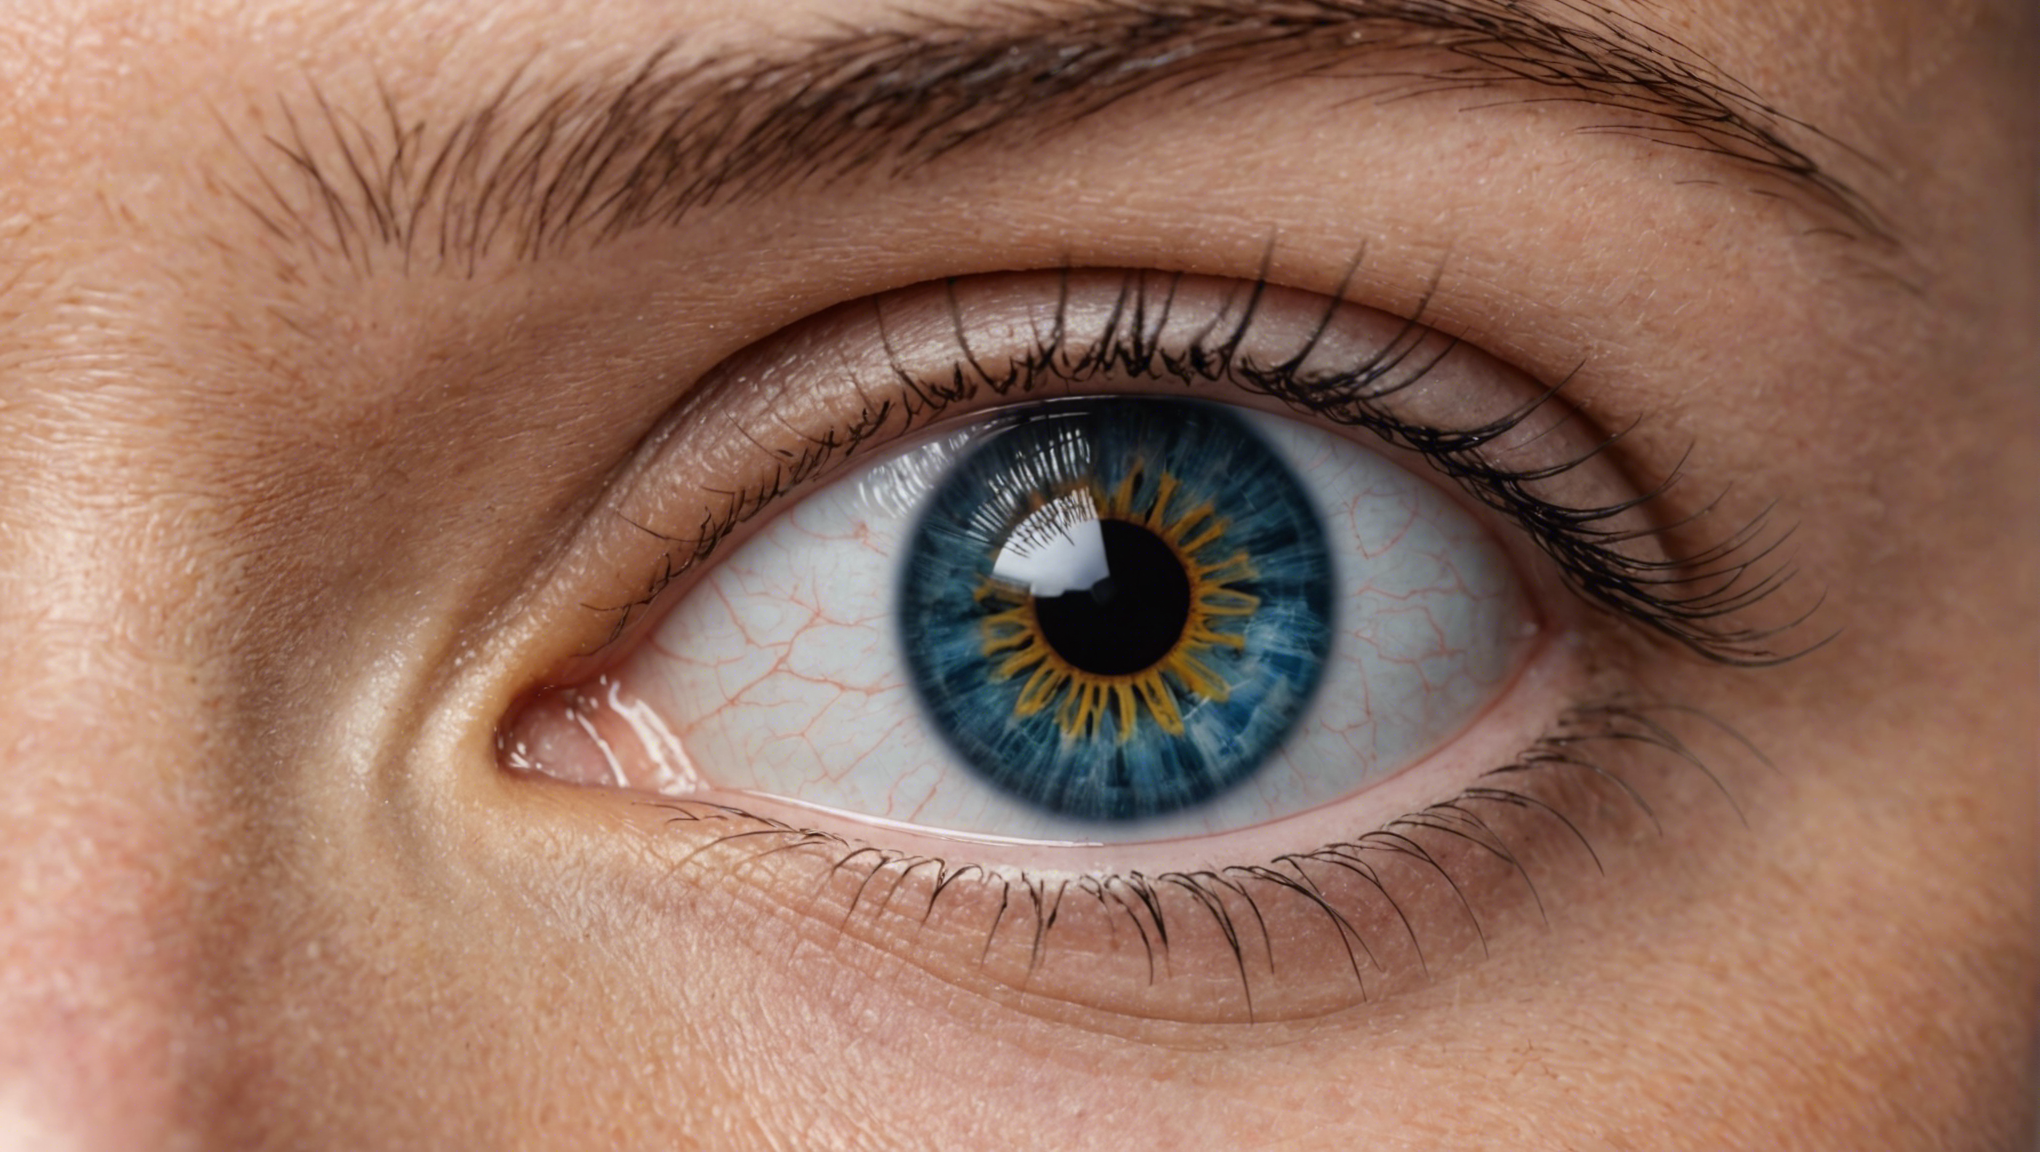 découvrez les dernières avancées en ophtalmologie et les nouveautés qui transforment la prise en charge des troubles oculaires. restez informé sur les innovations médicales dans le domaine de l'ophtalmologie.